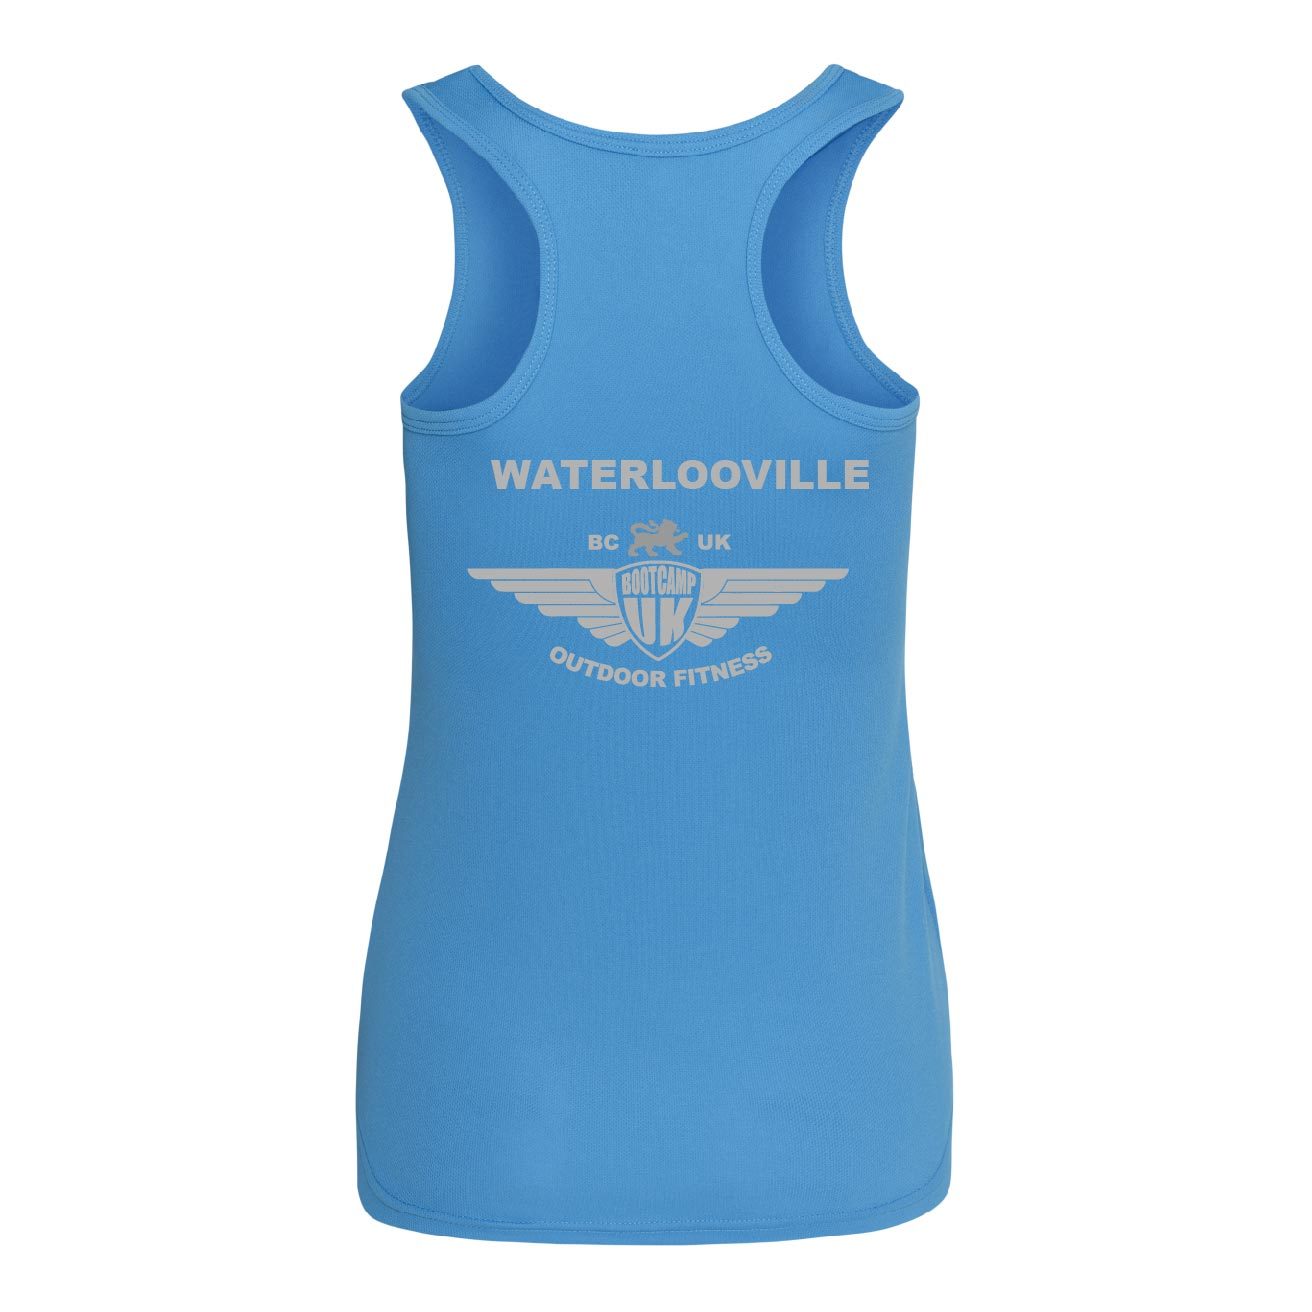 Waterlooville Small Ladies Vest